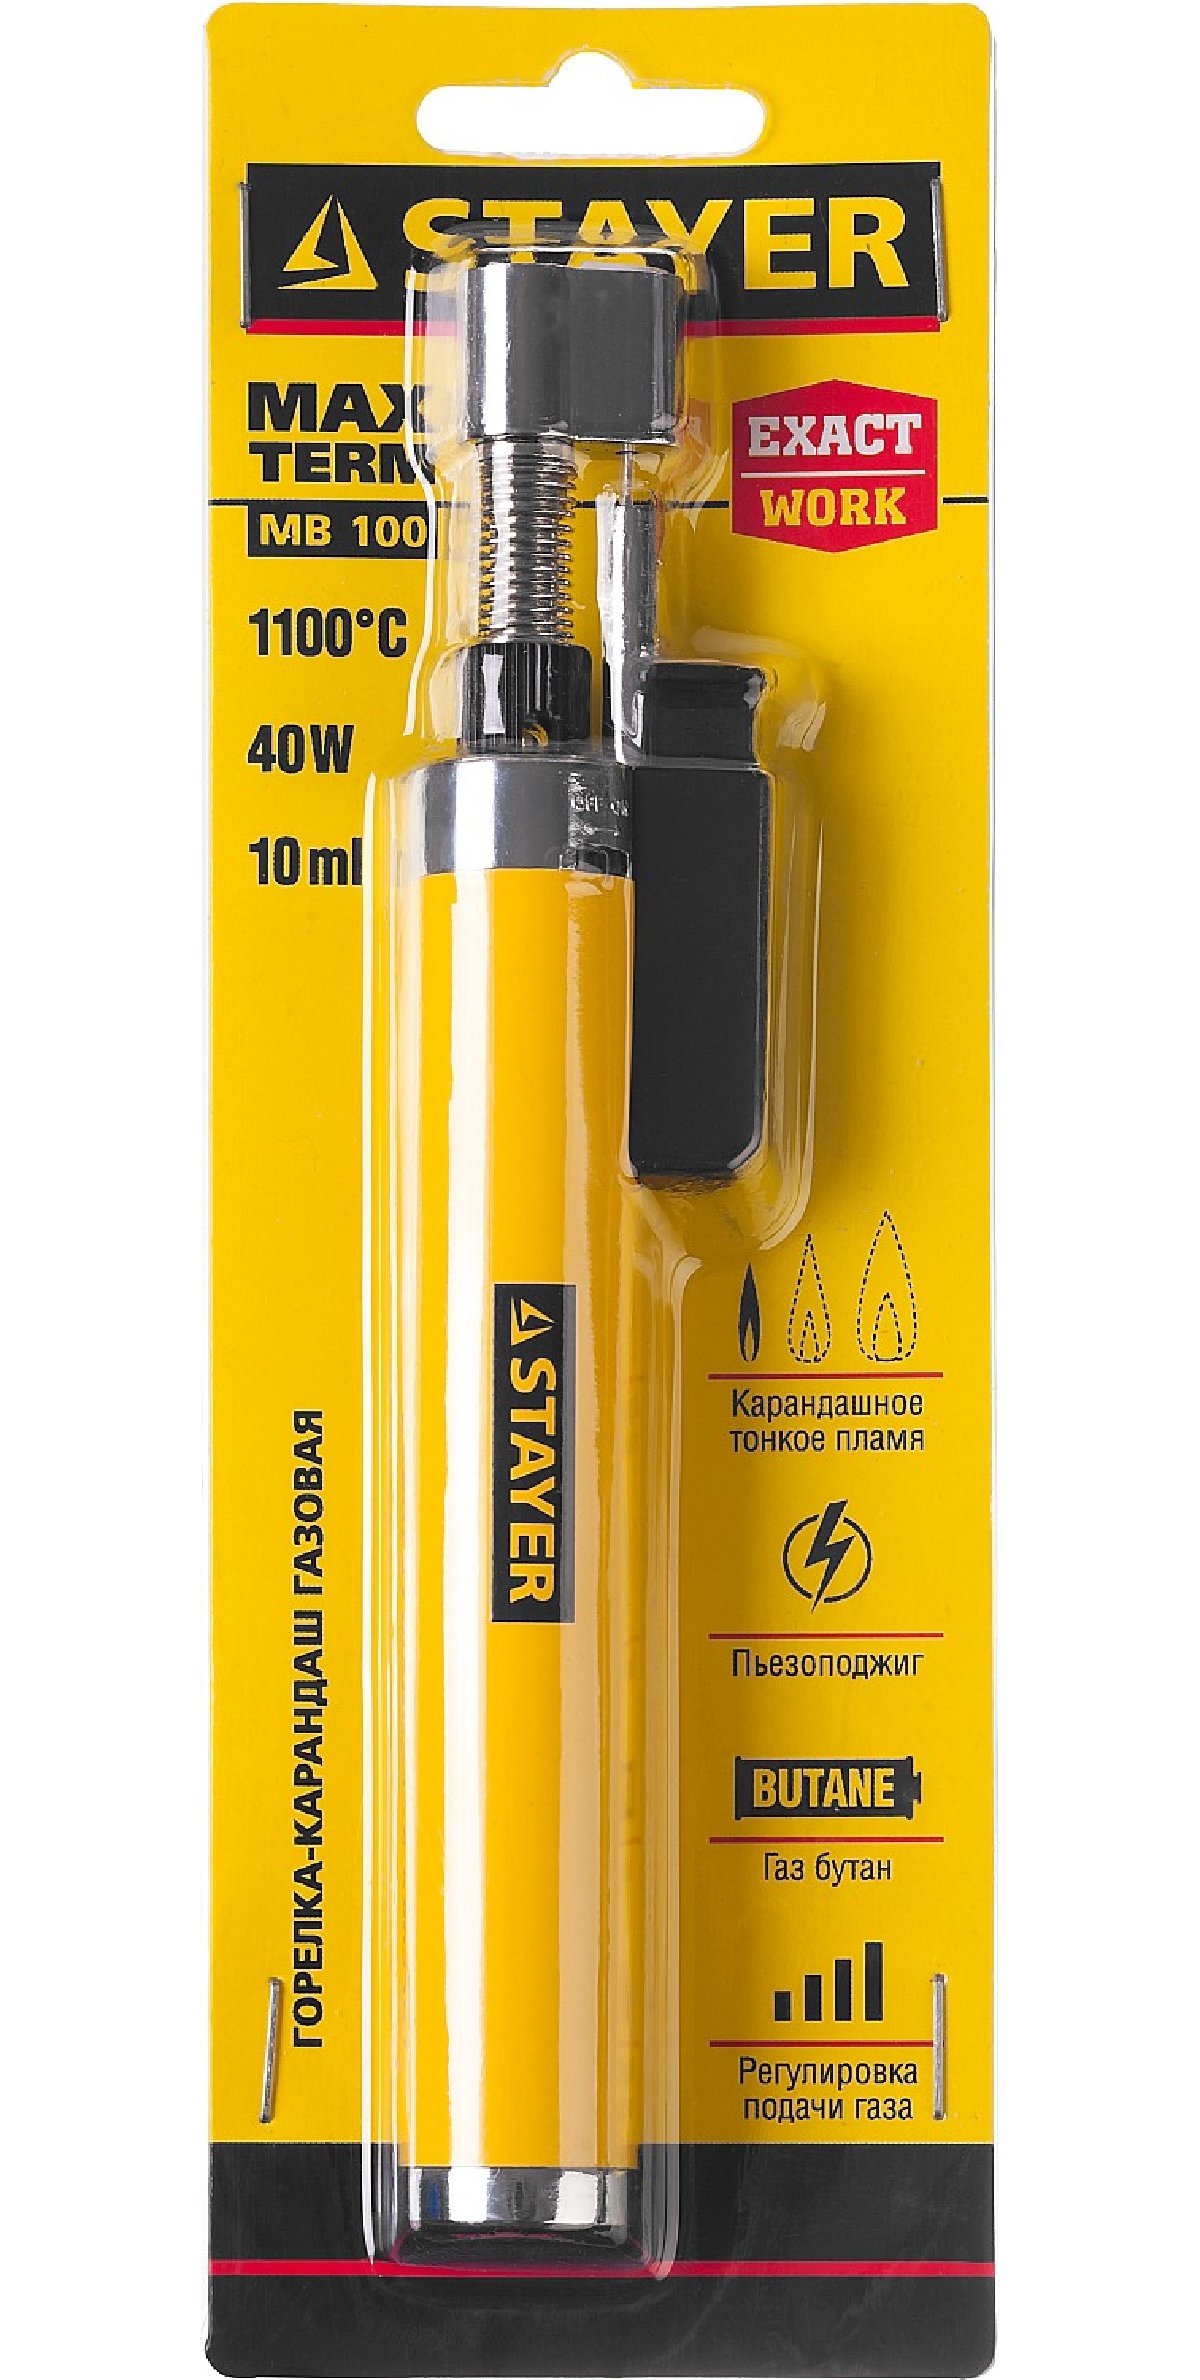 Газовая горелка-карандаш с пъезоподжигом STAYER MB100 1100С (55560)